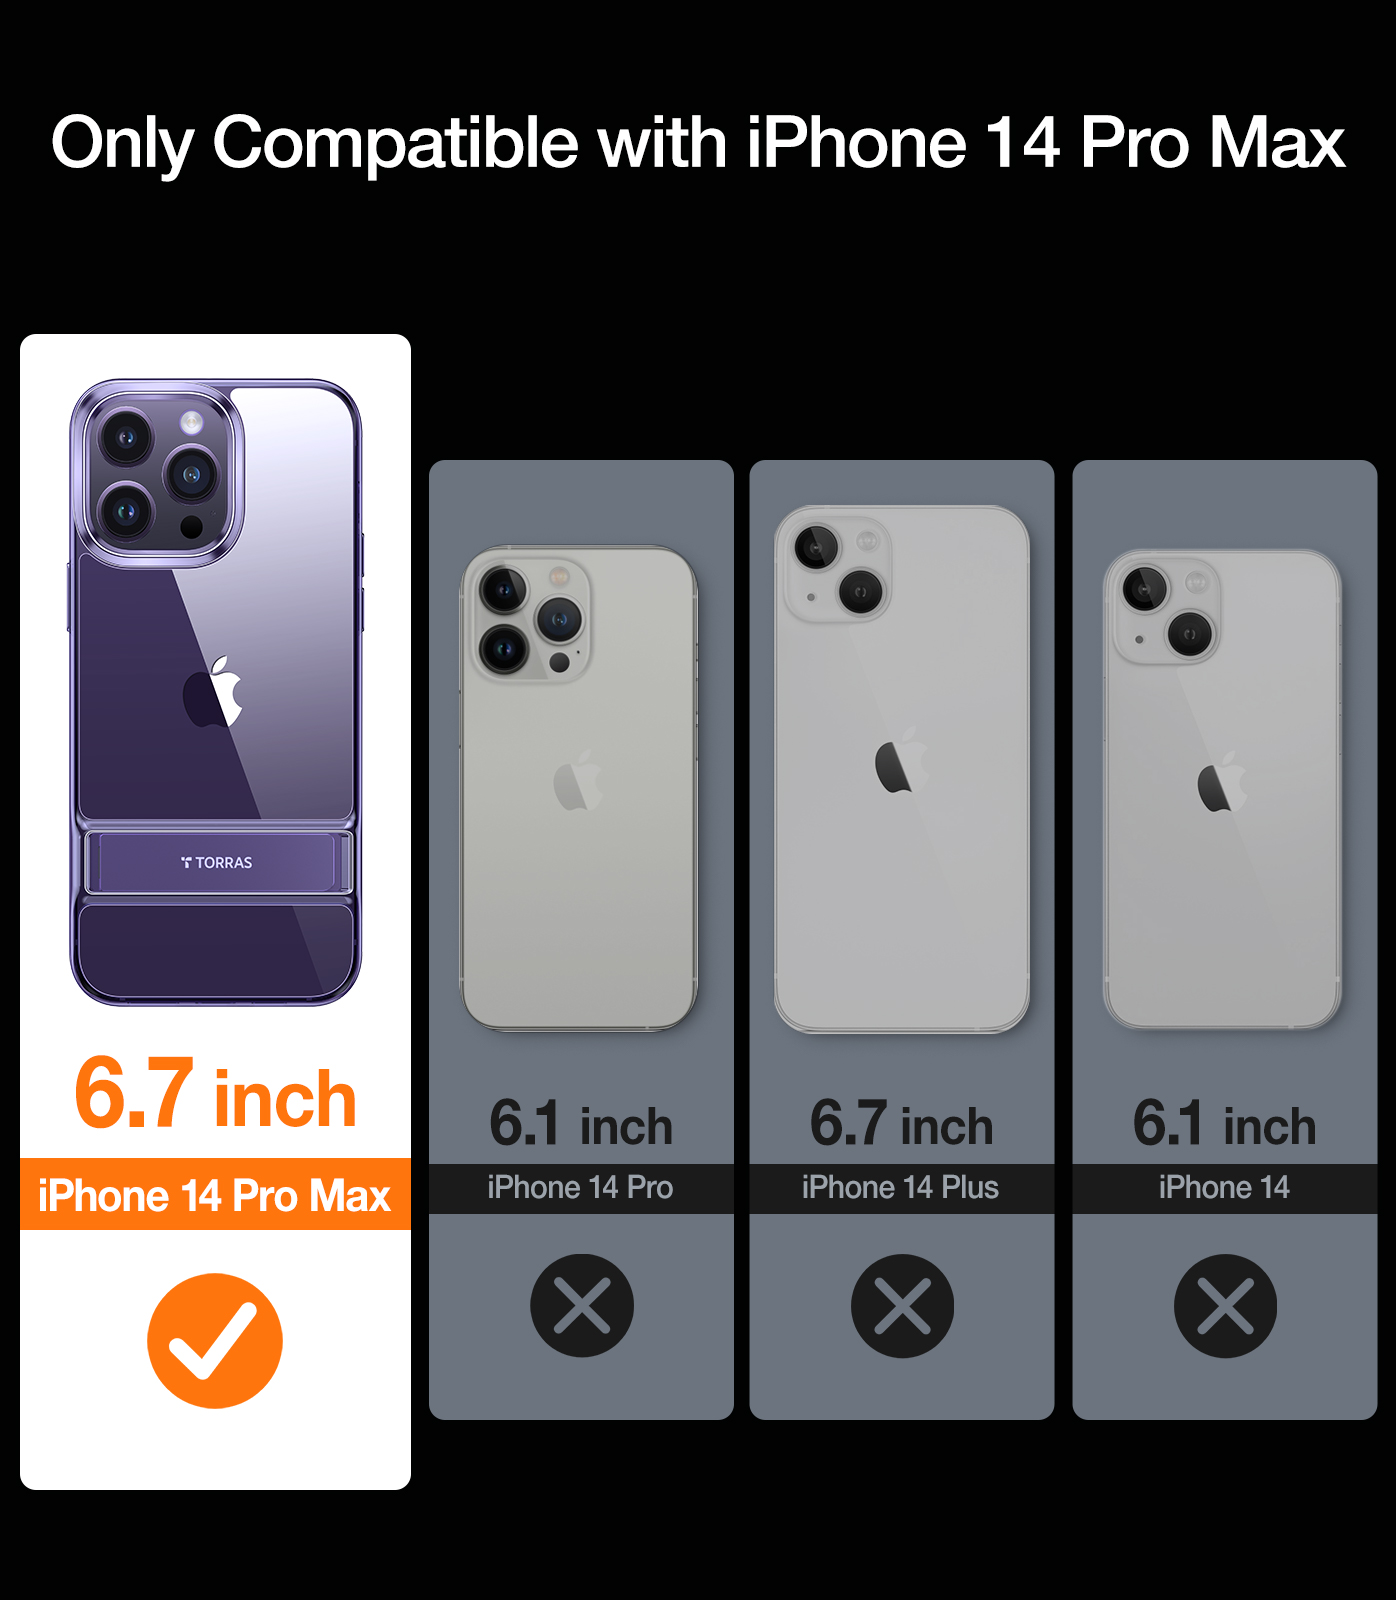 Coque TORRAS MoonClimber transparente compatible avec iPhone 14 Pro Max avec support, [Test de chute de qualité militaire de 3 mètres] violet foncé